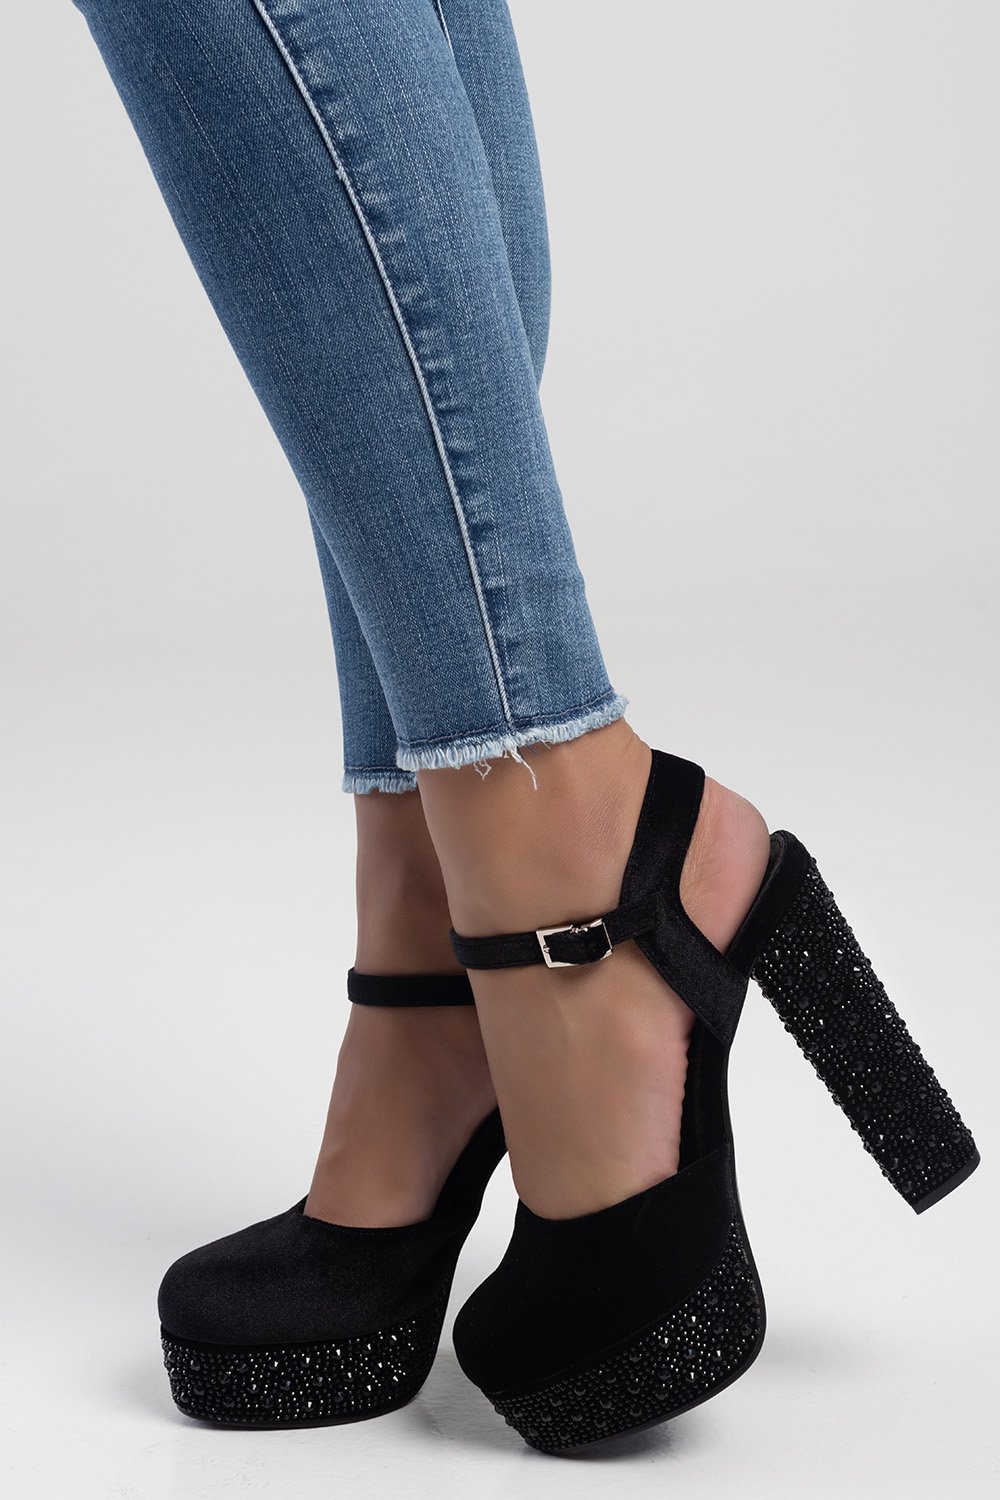 Patent Ankle Strap Platform Block Heels | SHEIN IN